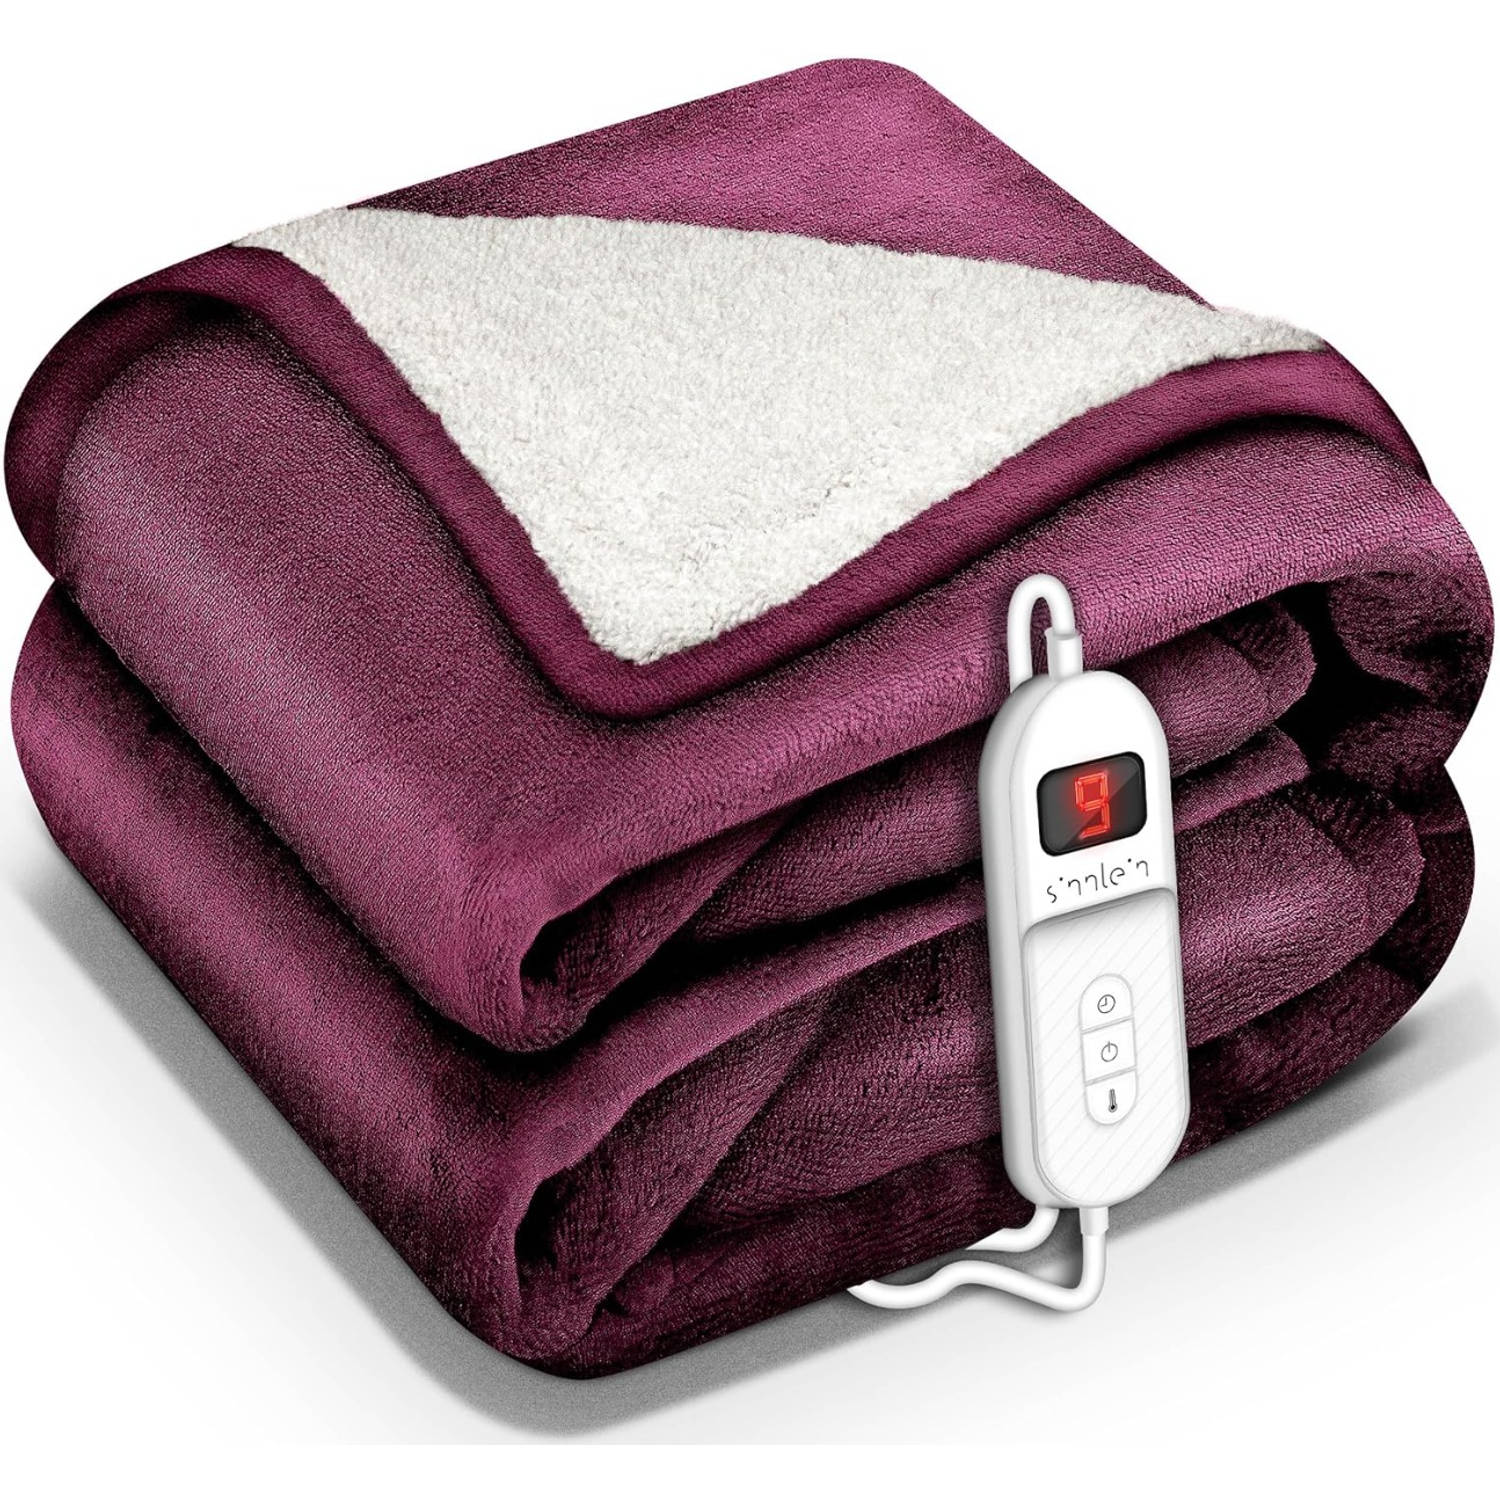 Sinnlein- Elektrische deken met automatische uitschakeling, rood, 180x130 cm, warmtedeken met 9 temperatuurniveaus, k...